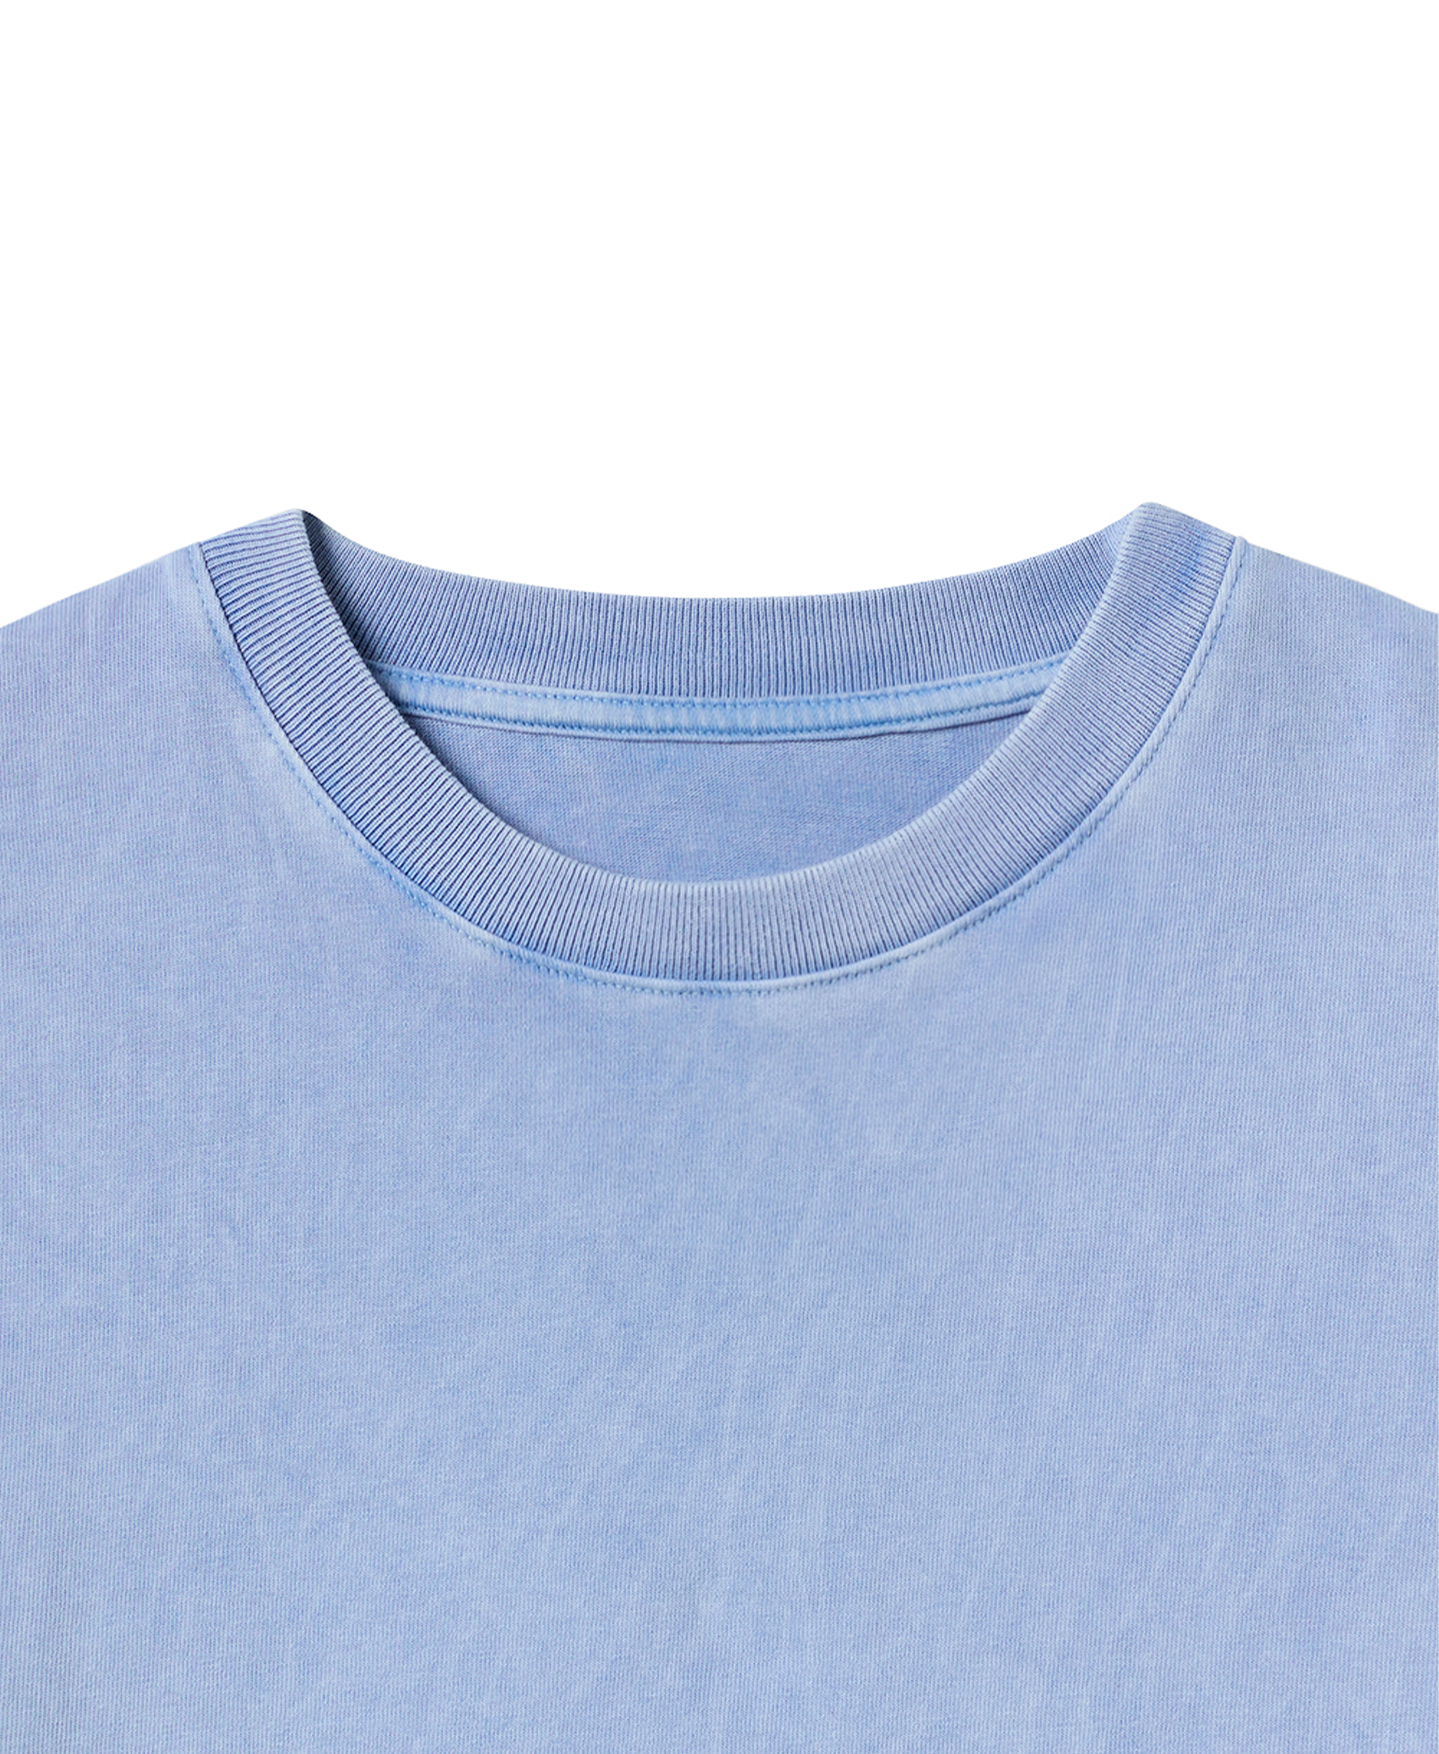 300 GSM 'Vintage Blue' T-Shirt